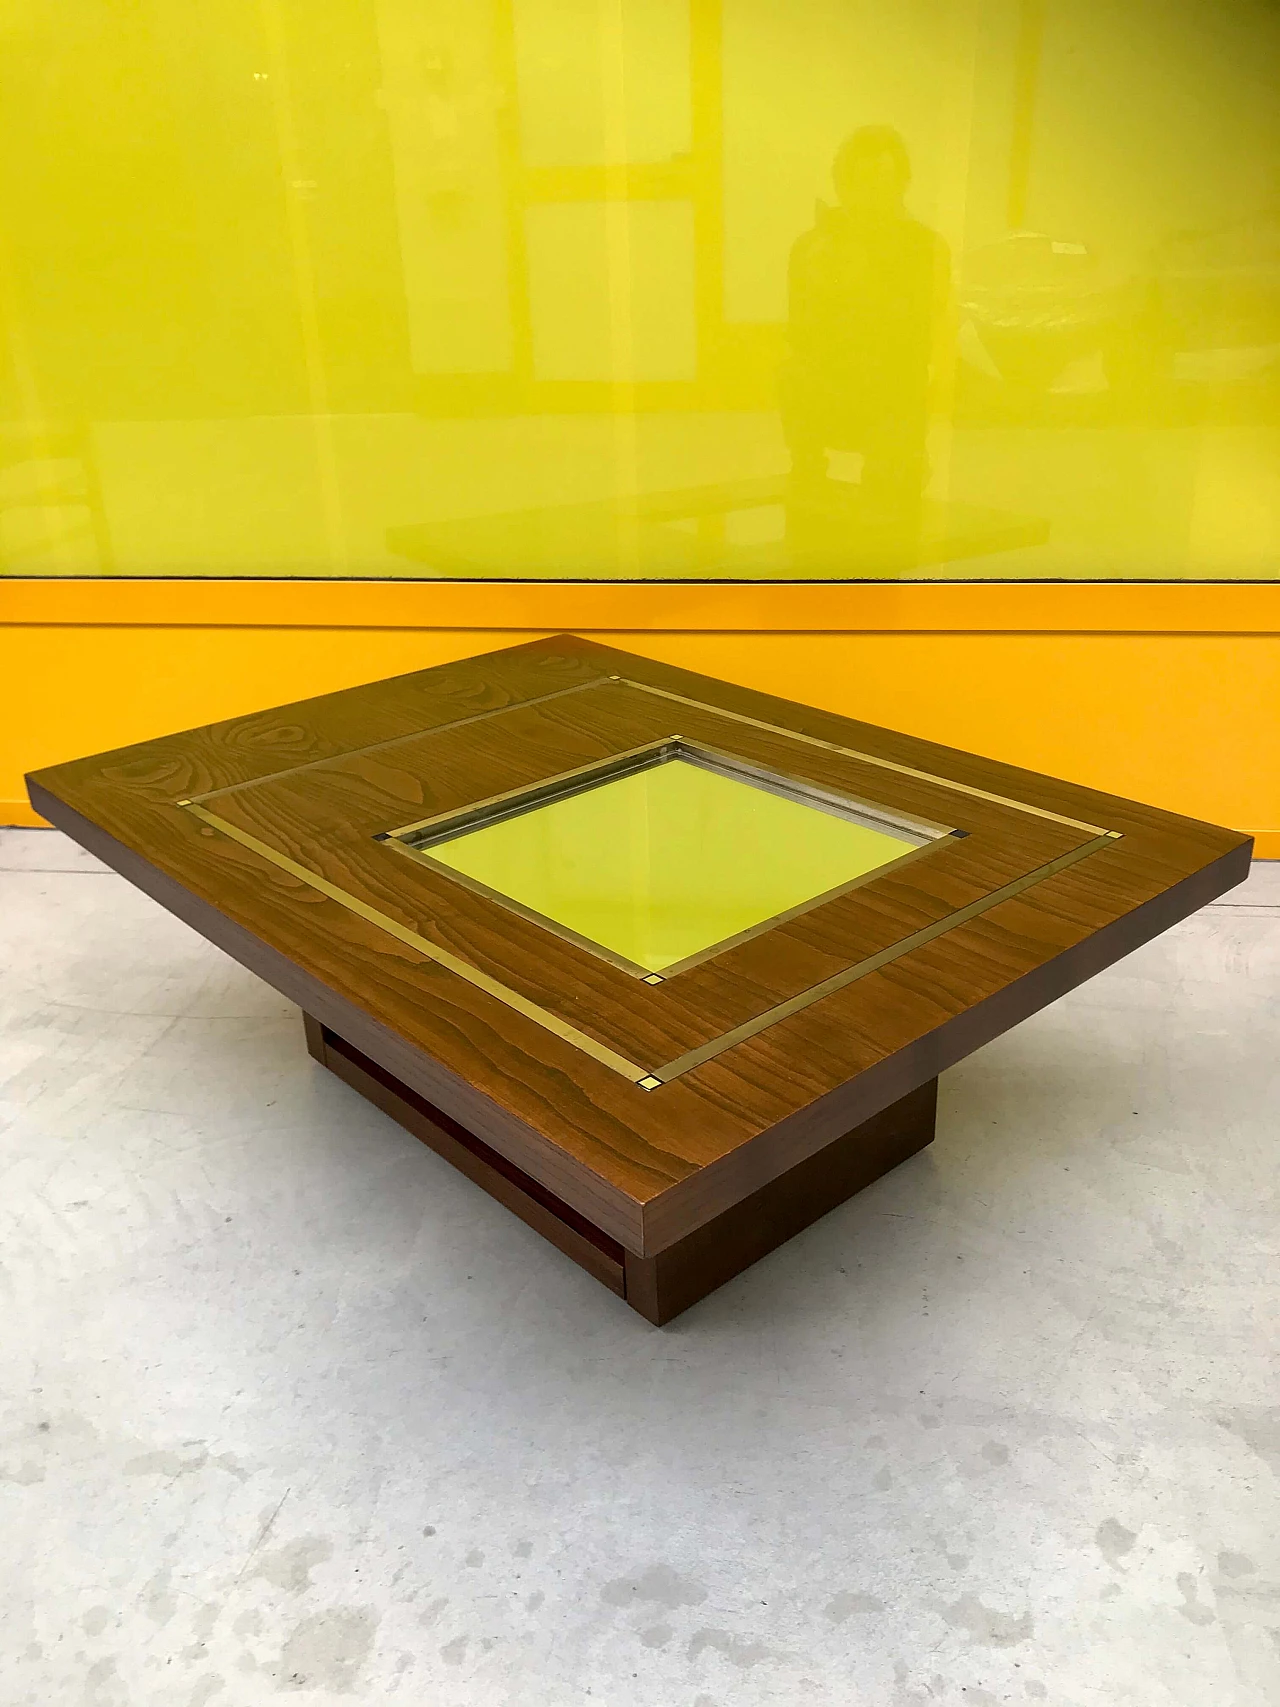 Tavolino da Caffè tipo Willy Rizzo in legno di rovere con specchio e profili di ottone, originale anni '60/'70 1226029